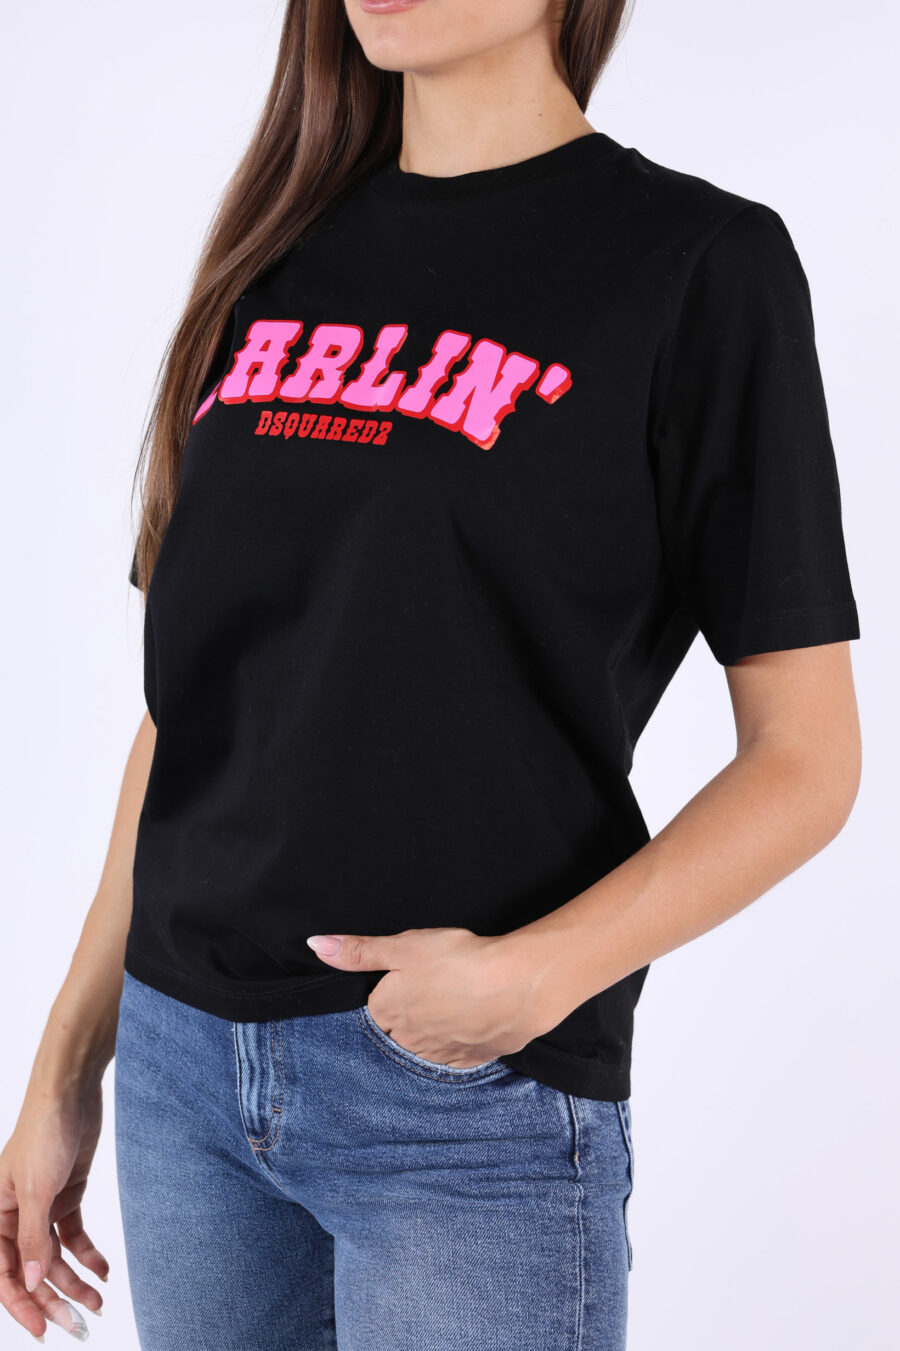 Camiseta negra con maxilogo "darlin" fucsia - 361223054662202093